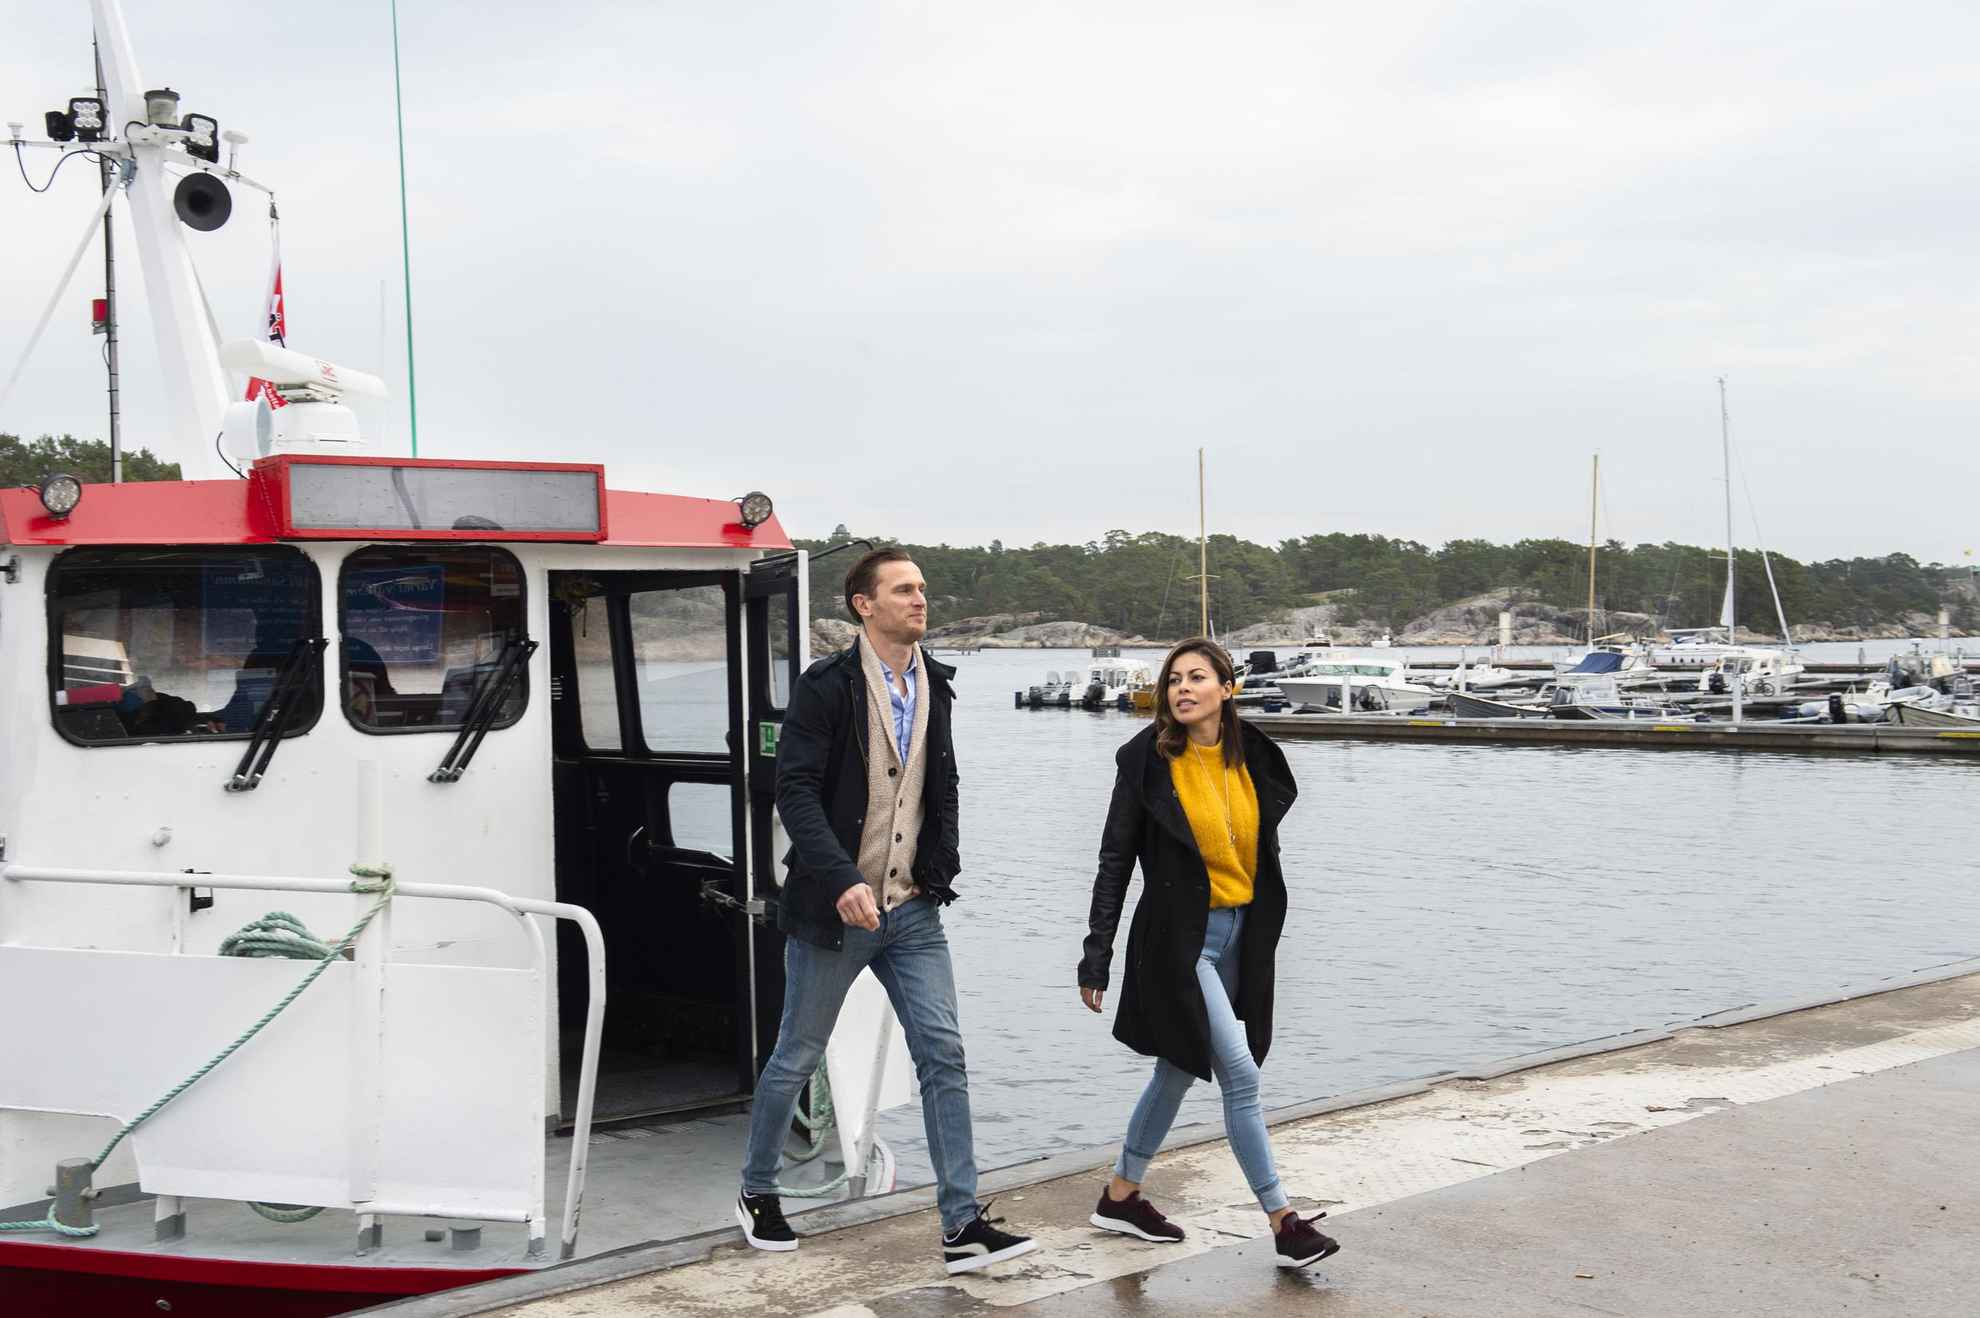 Boat to Stockholm archipelago